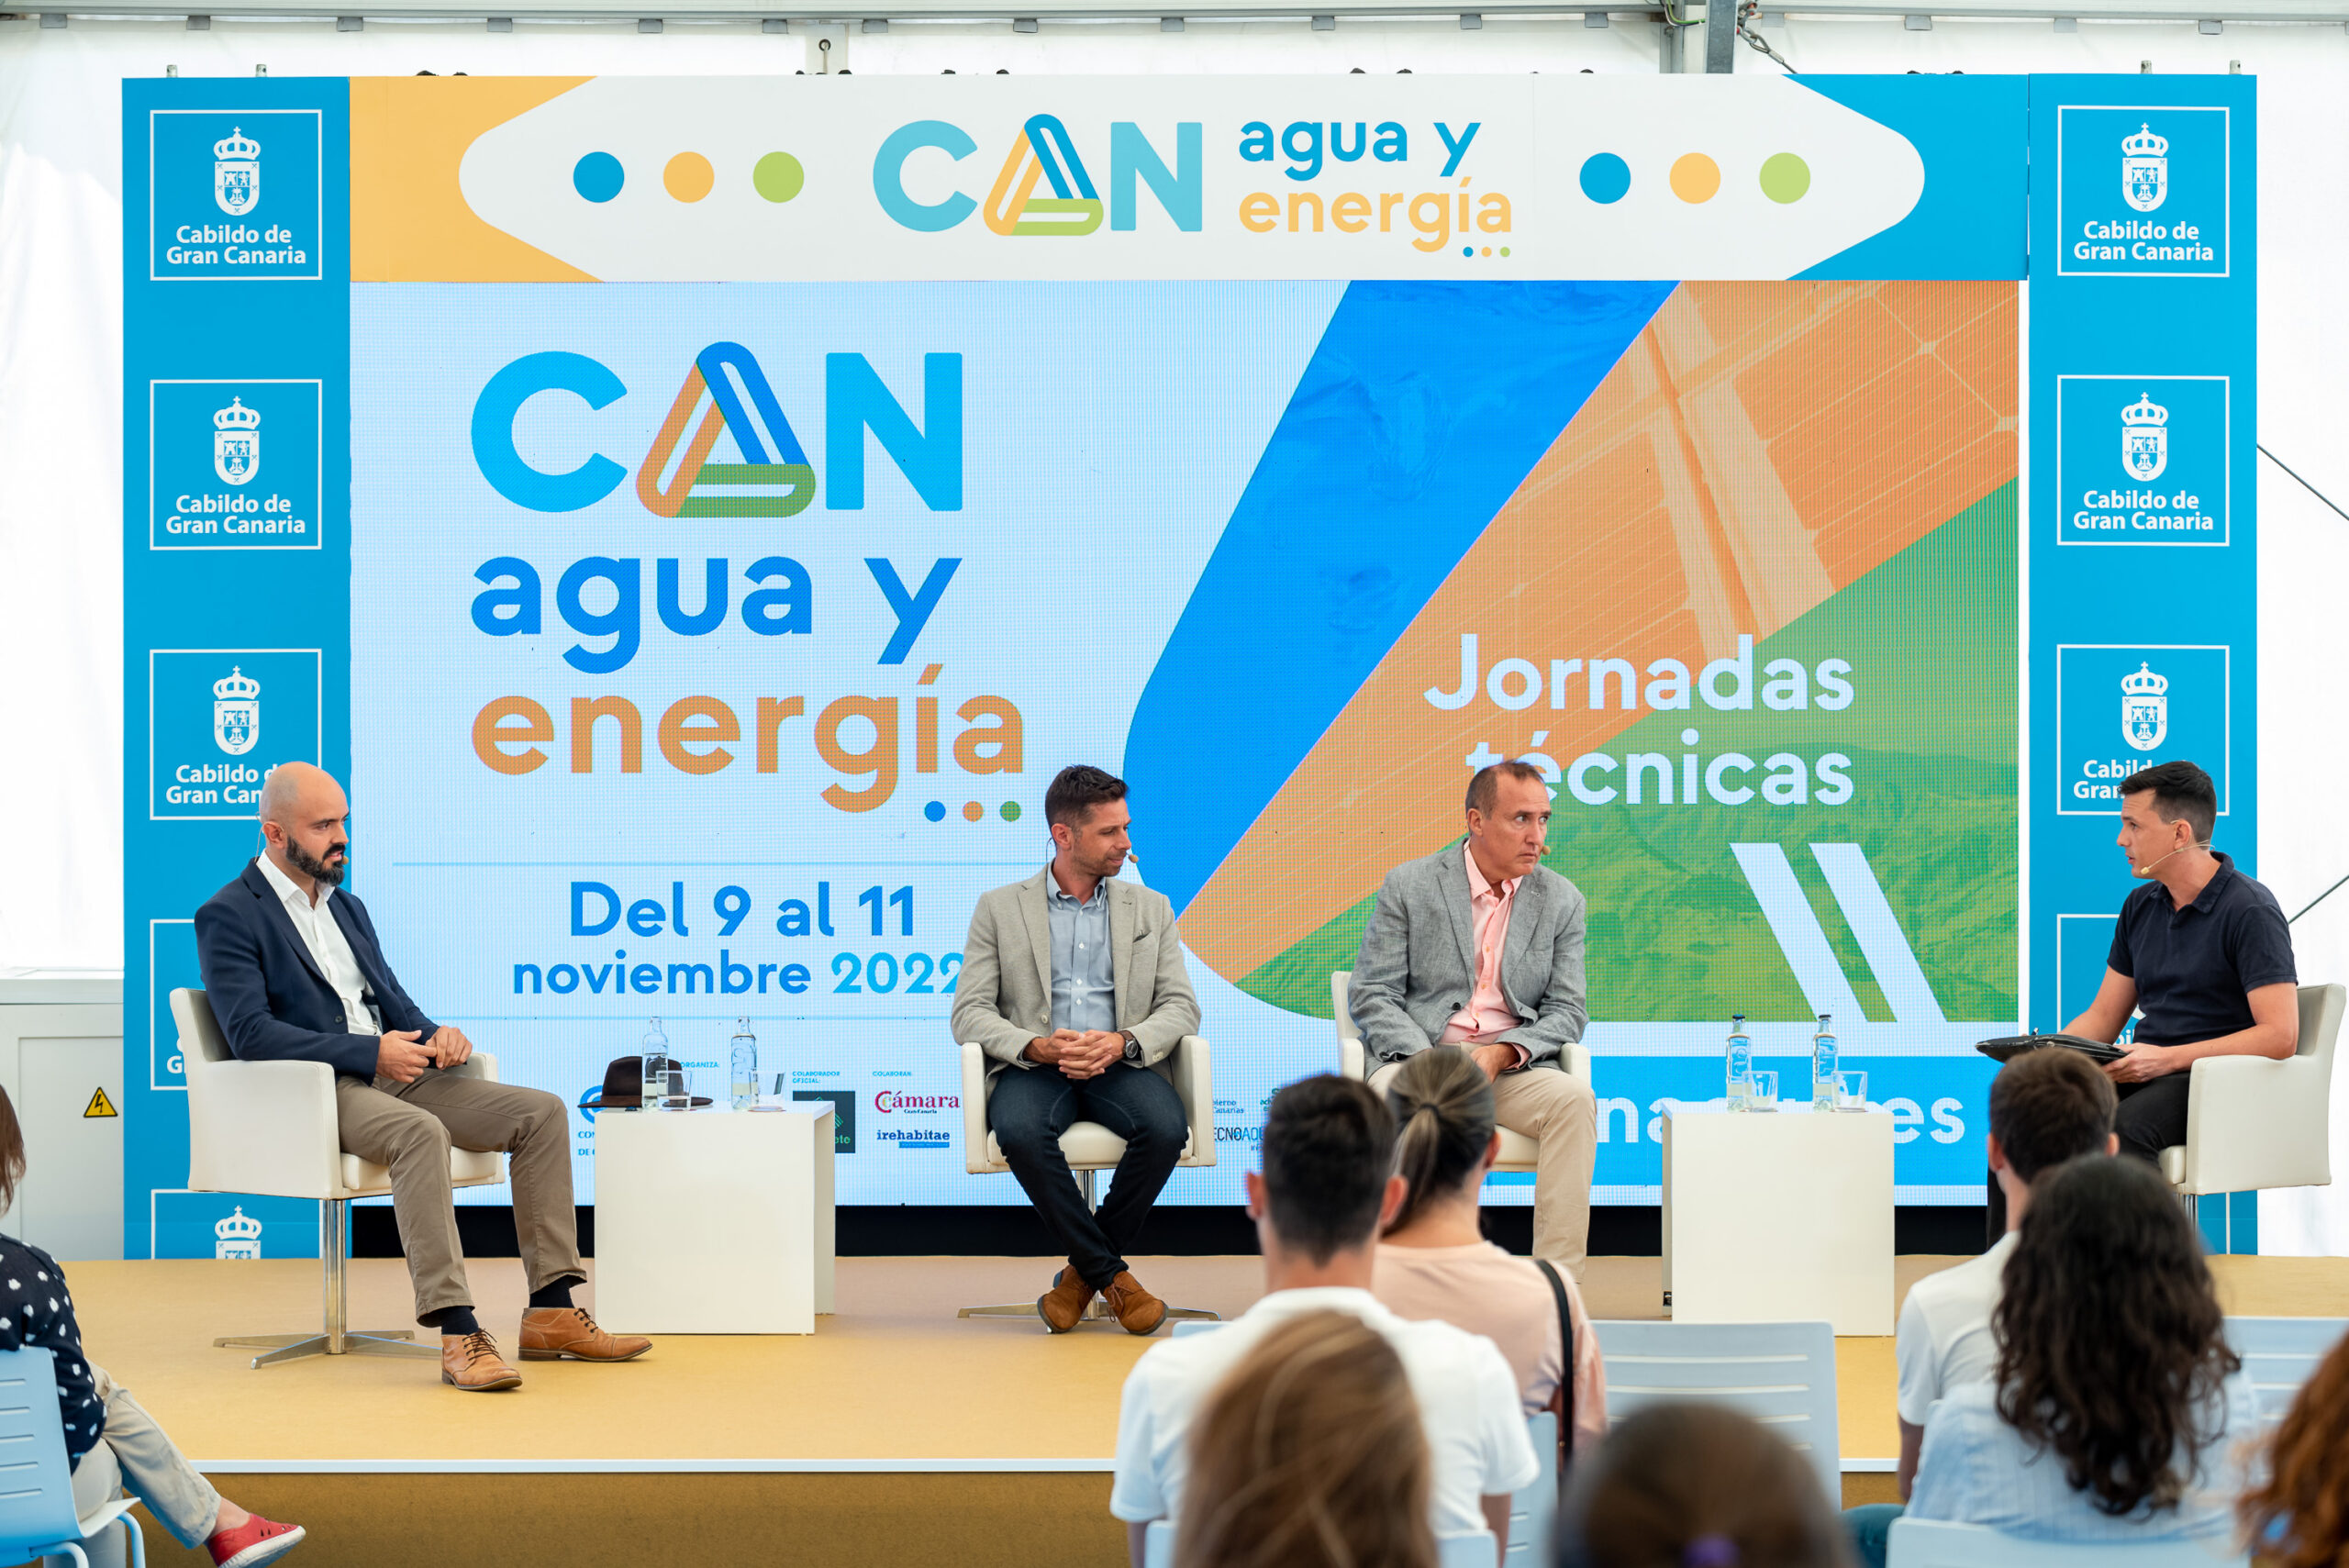 Los retos de la transición energética se debaten en la segunda jornada de la Feria Internacional Canagua y Energía